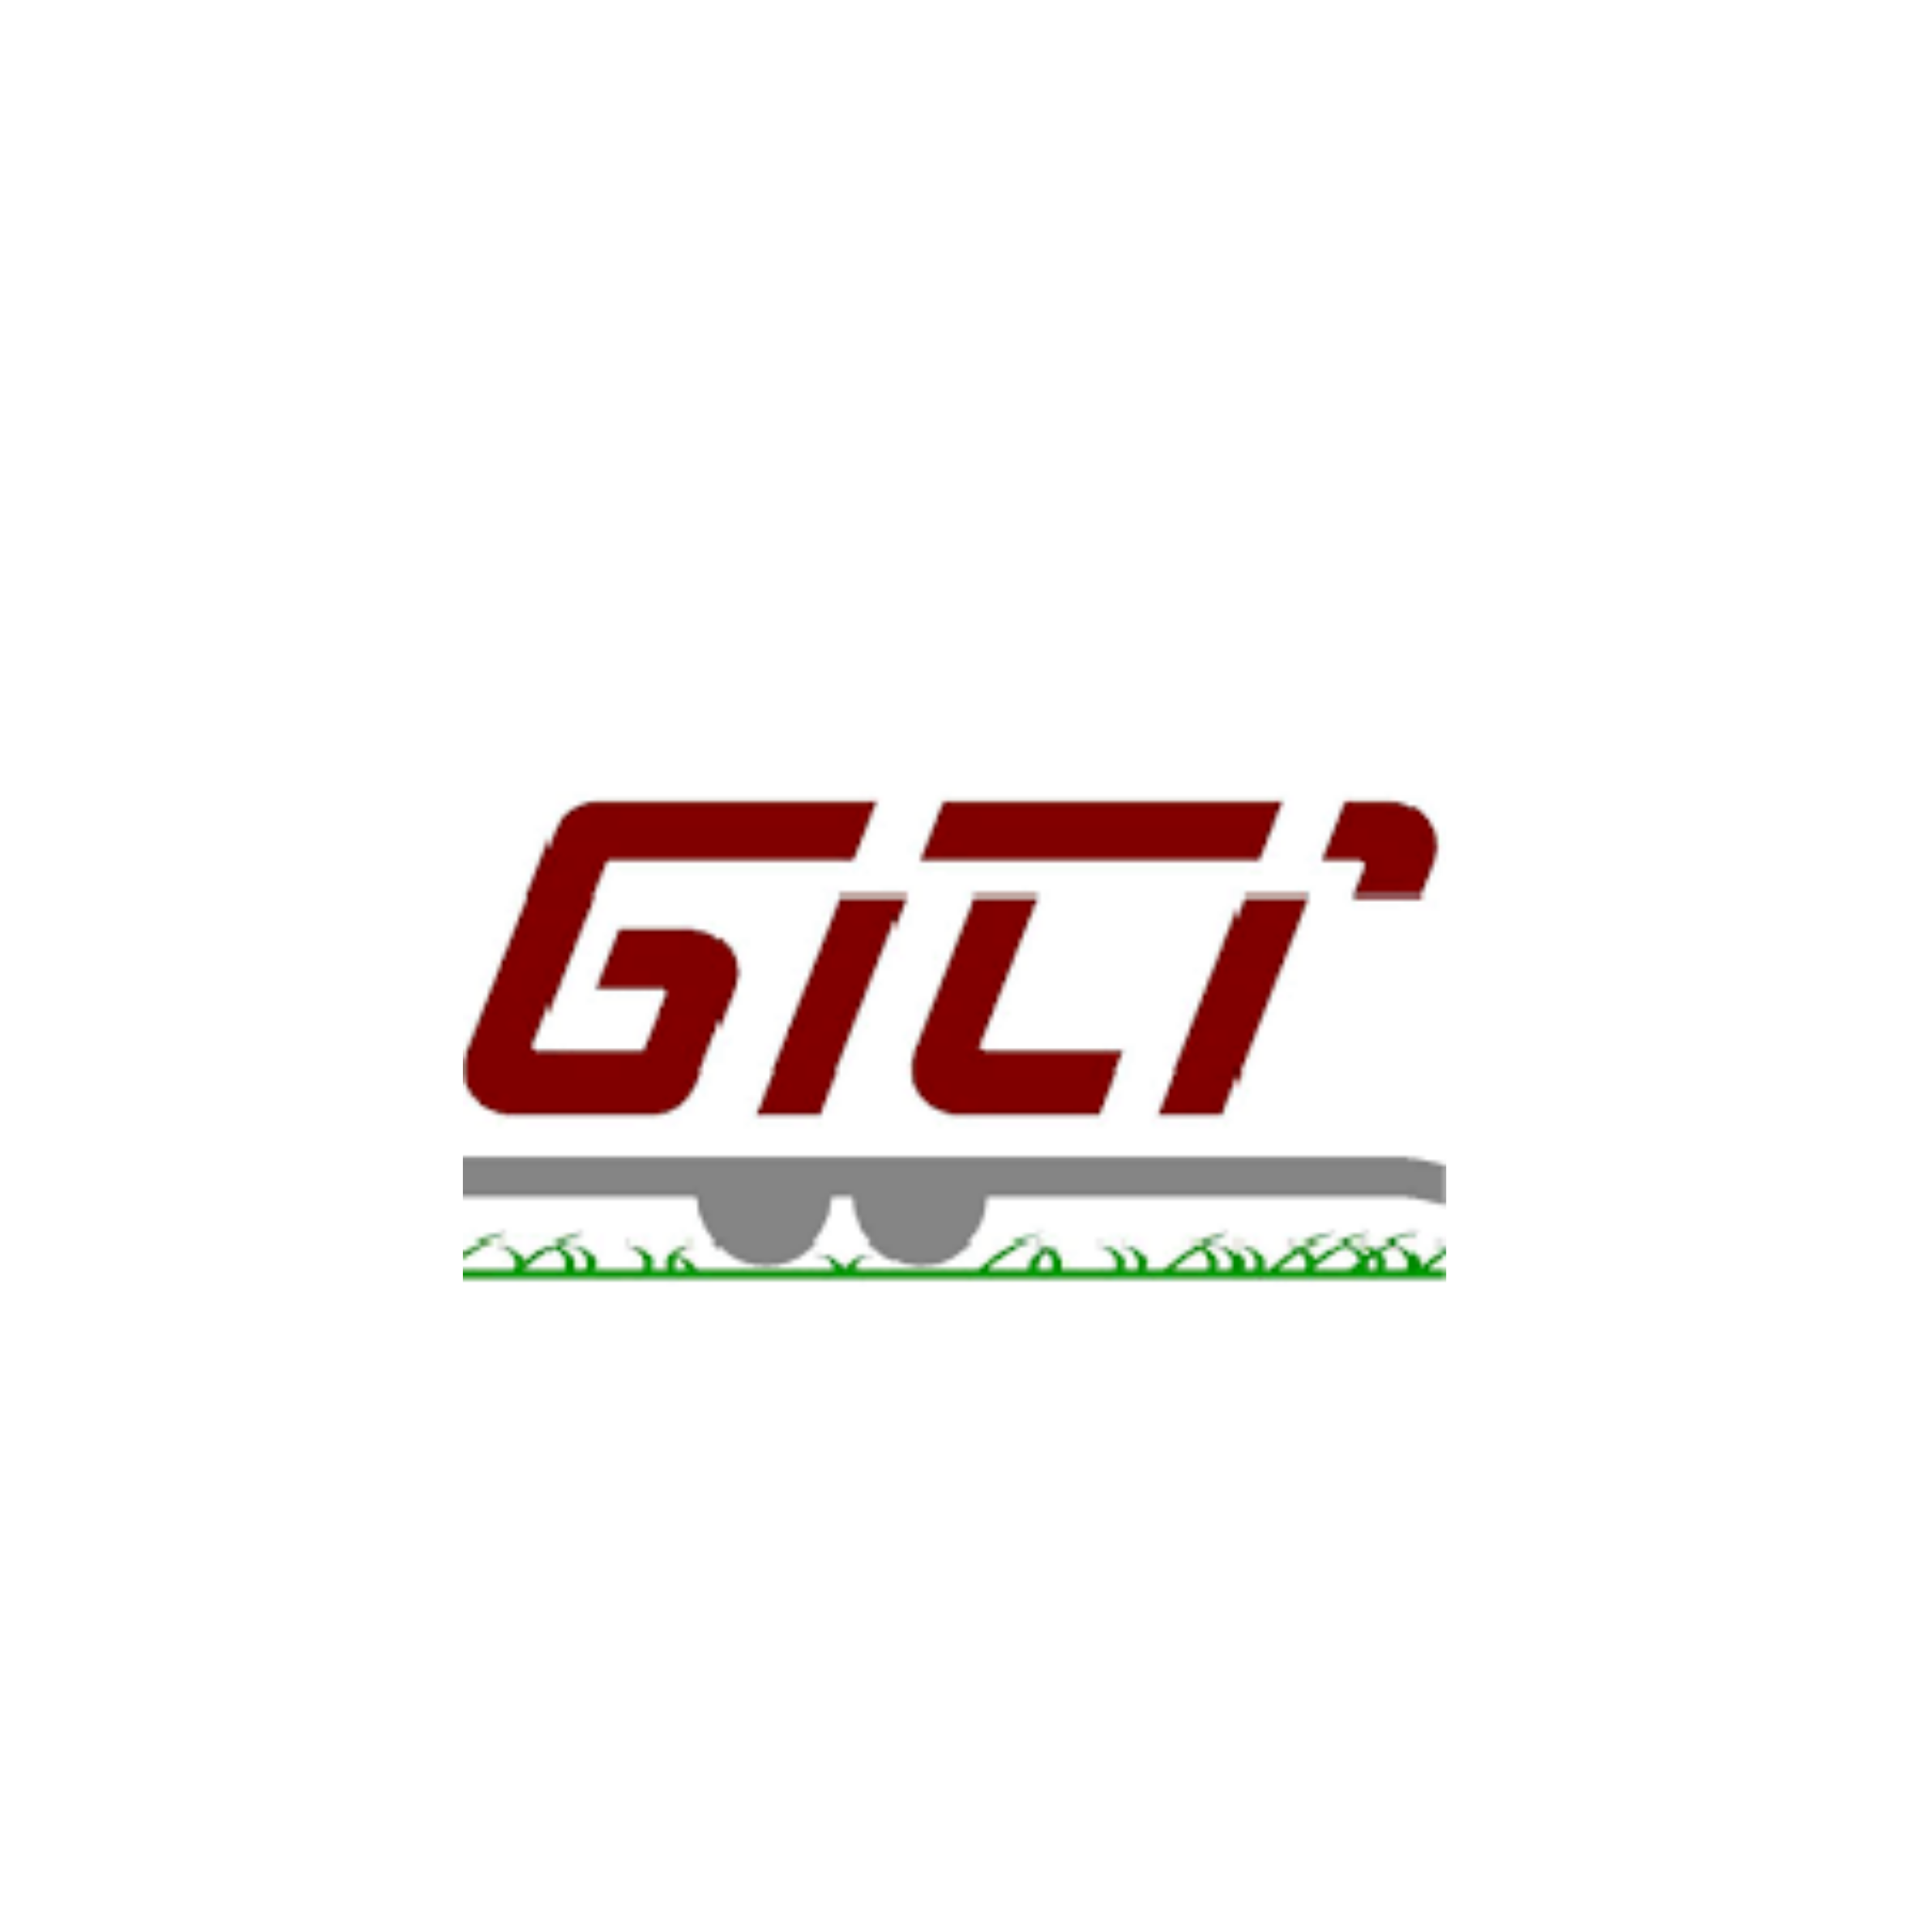 gili-01-01